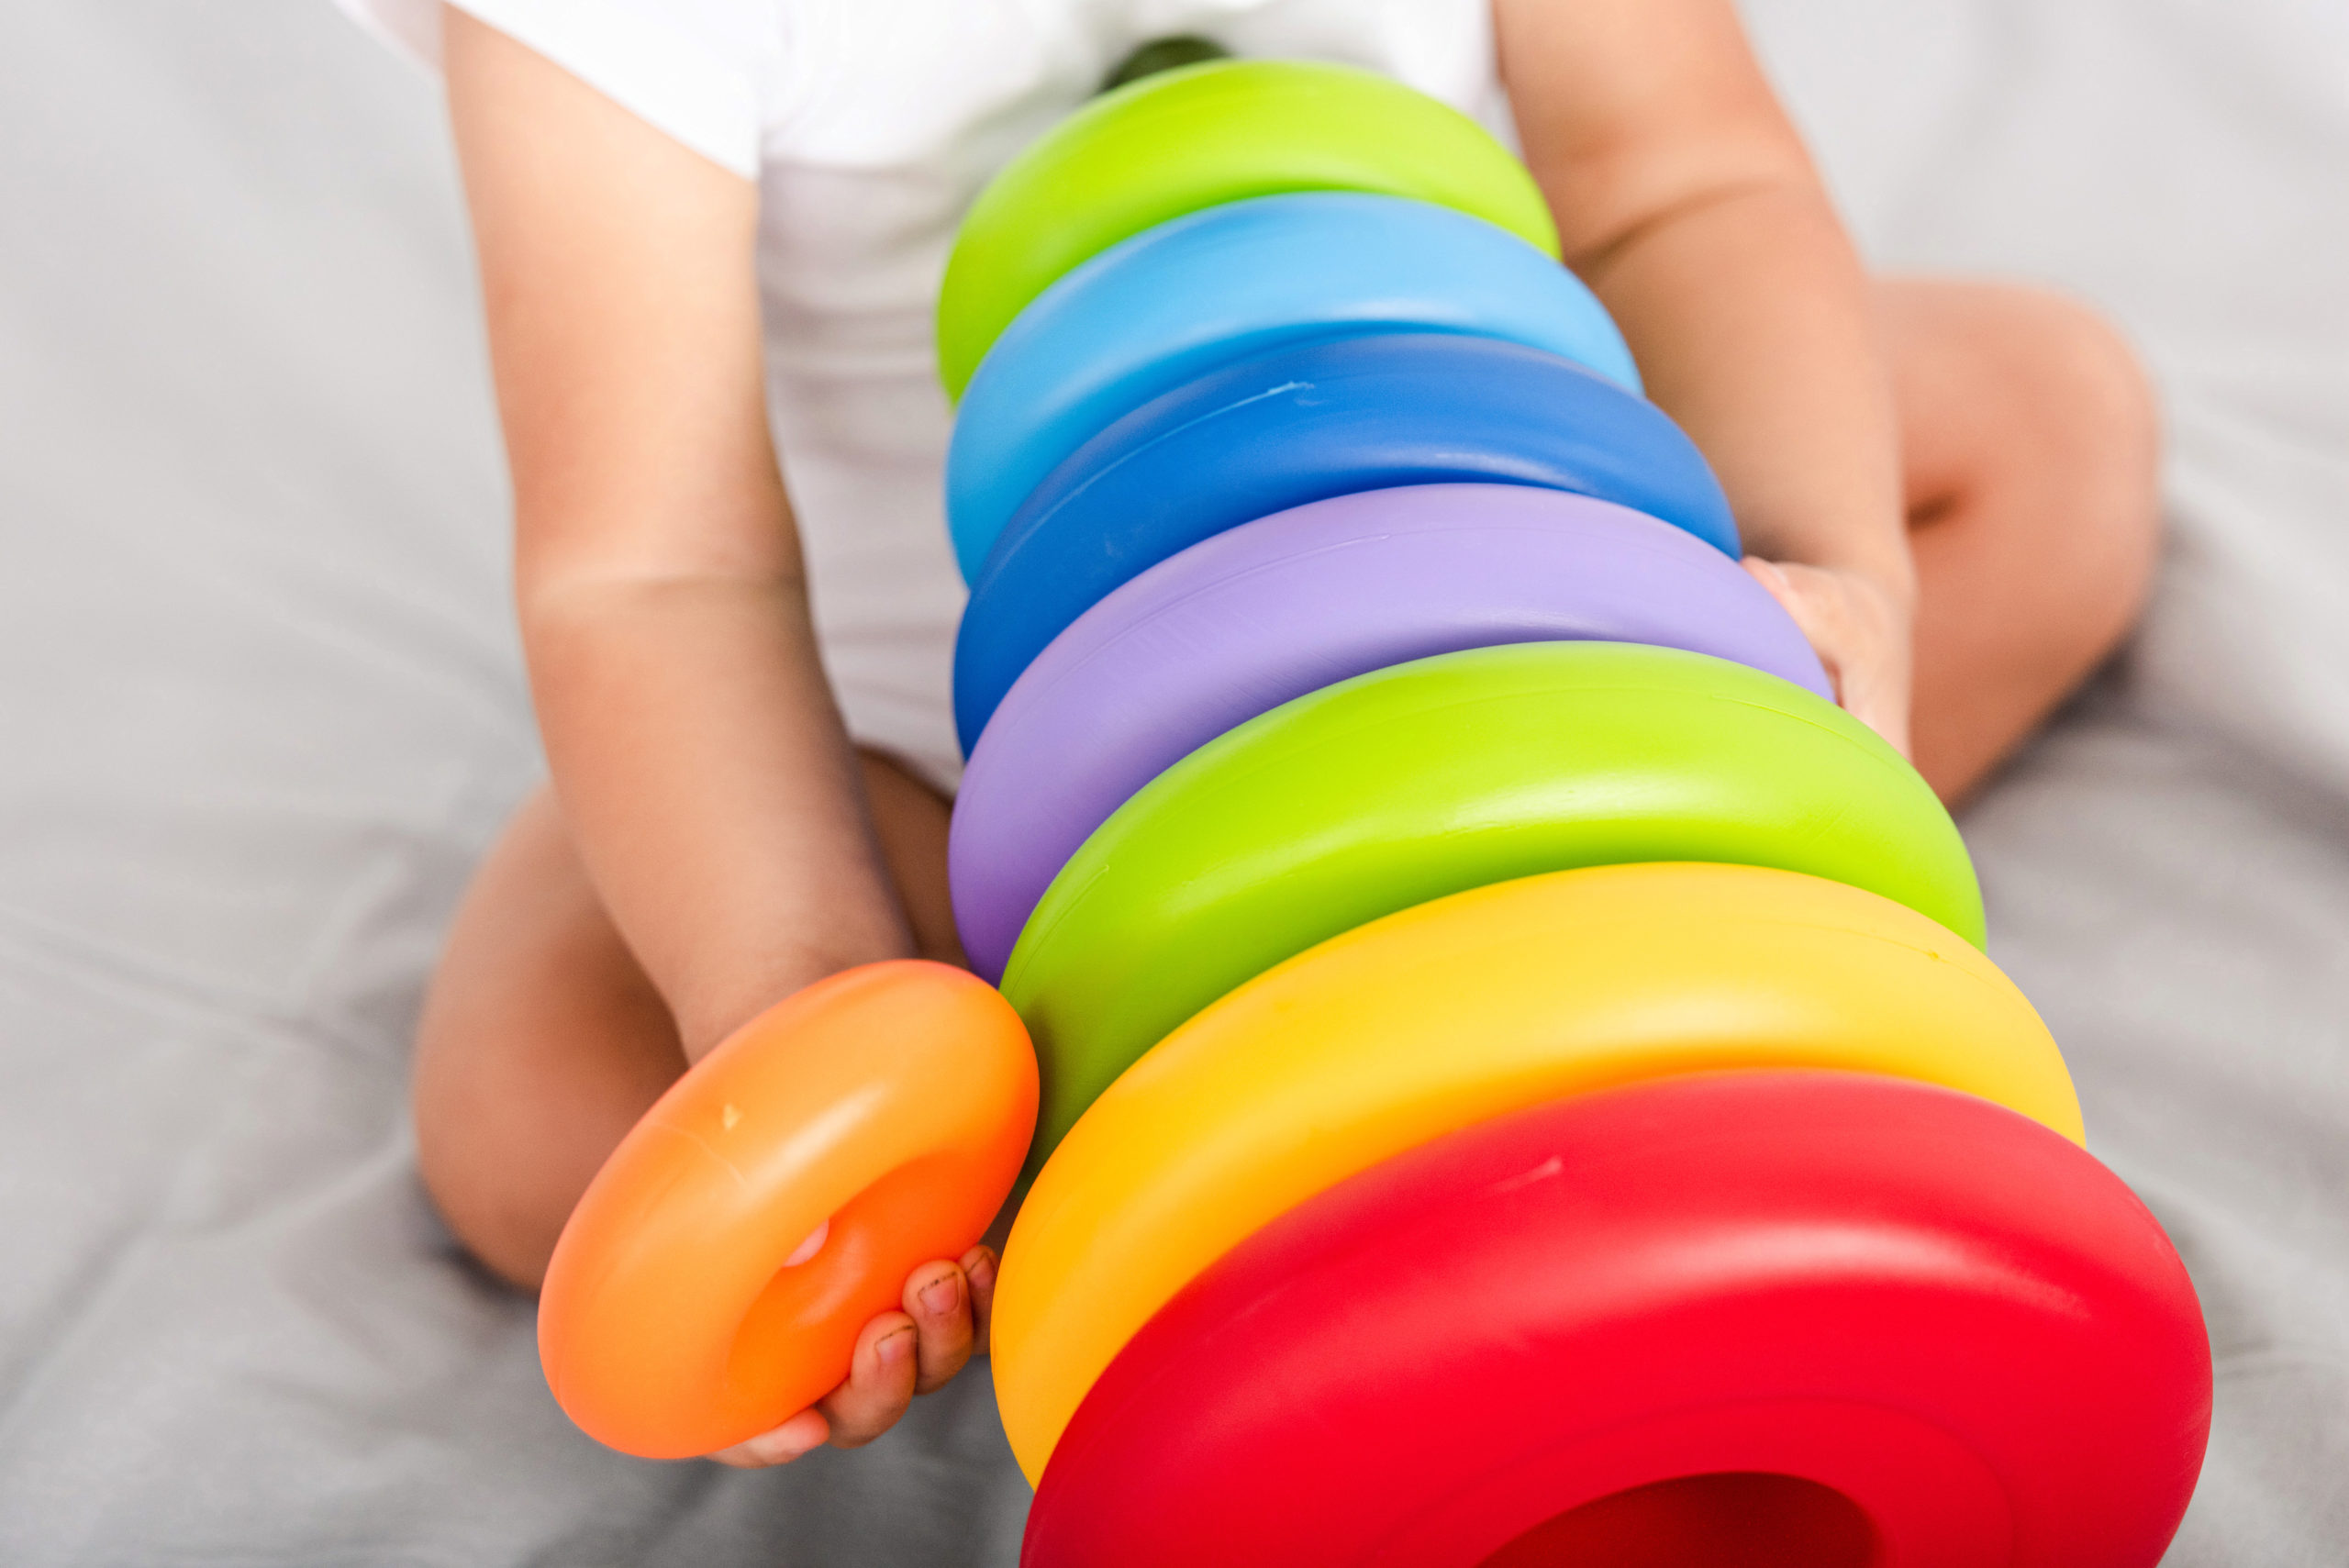 Infant Cognitive Development Activities